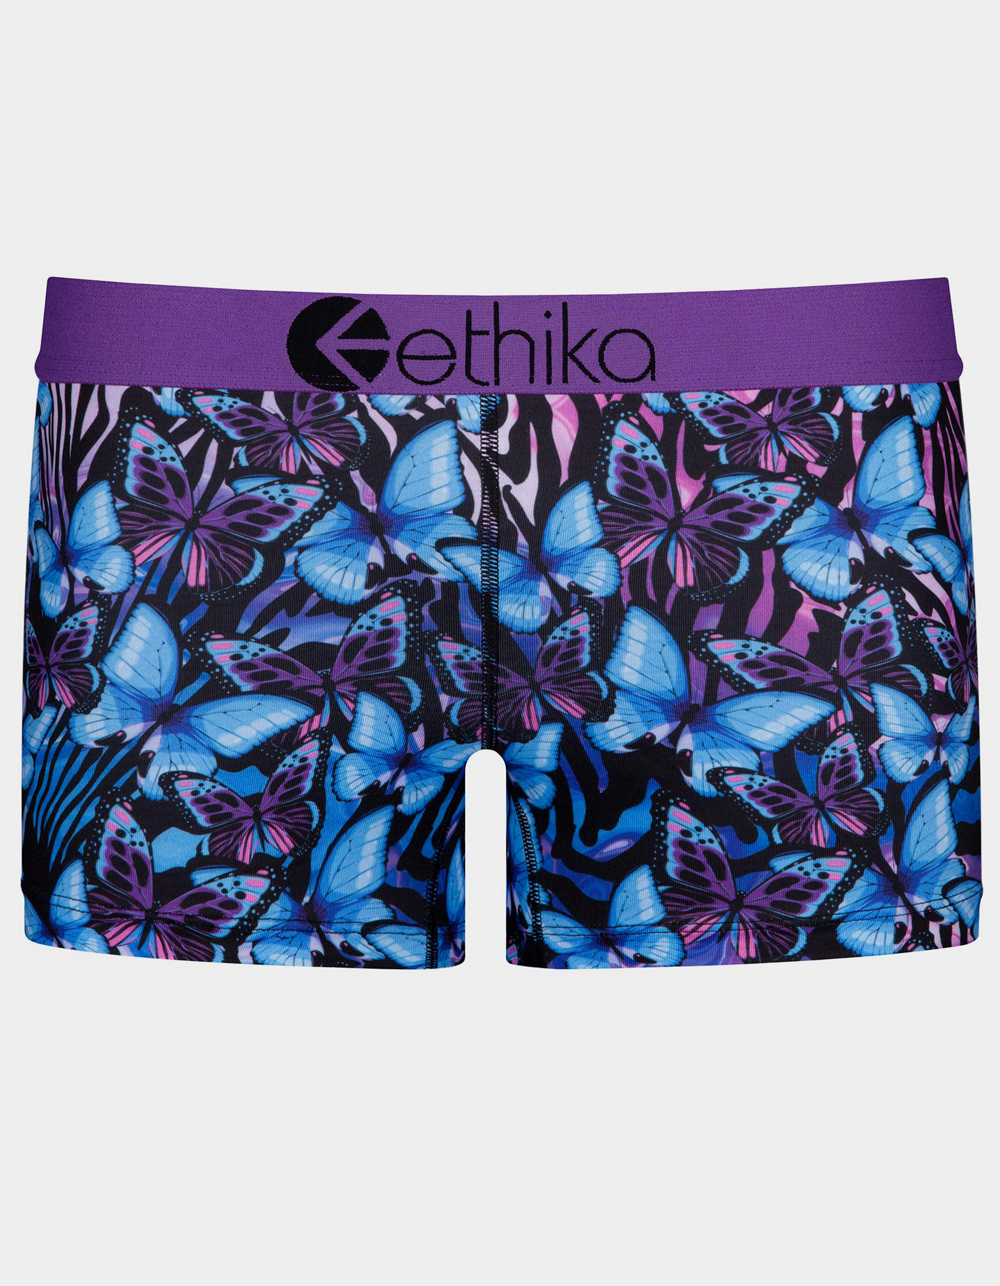 Ethika Chew Pink & Blue Boyshort Underwear